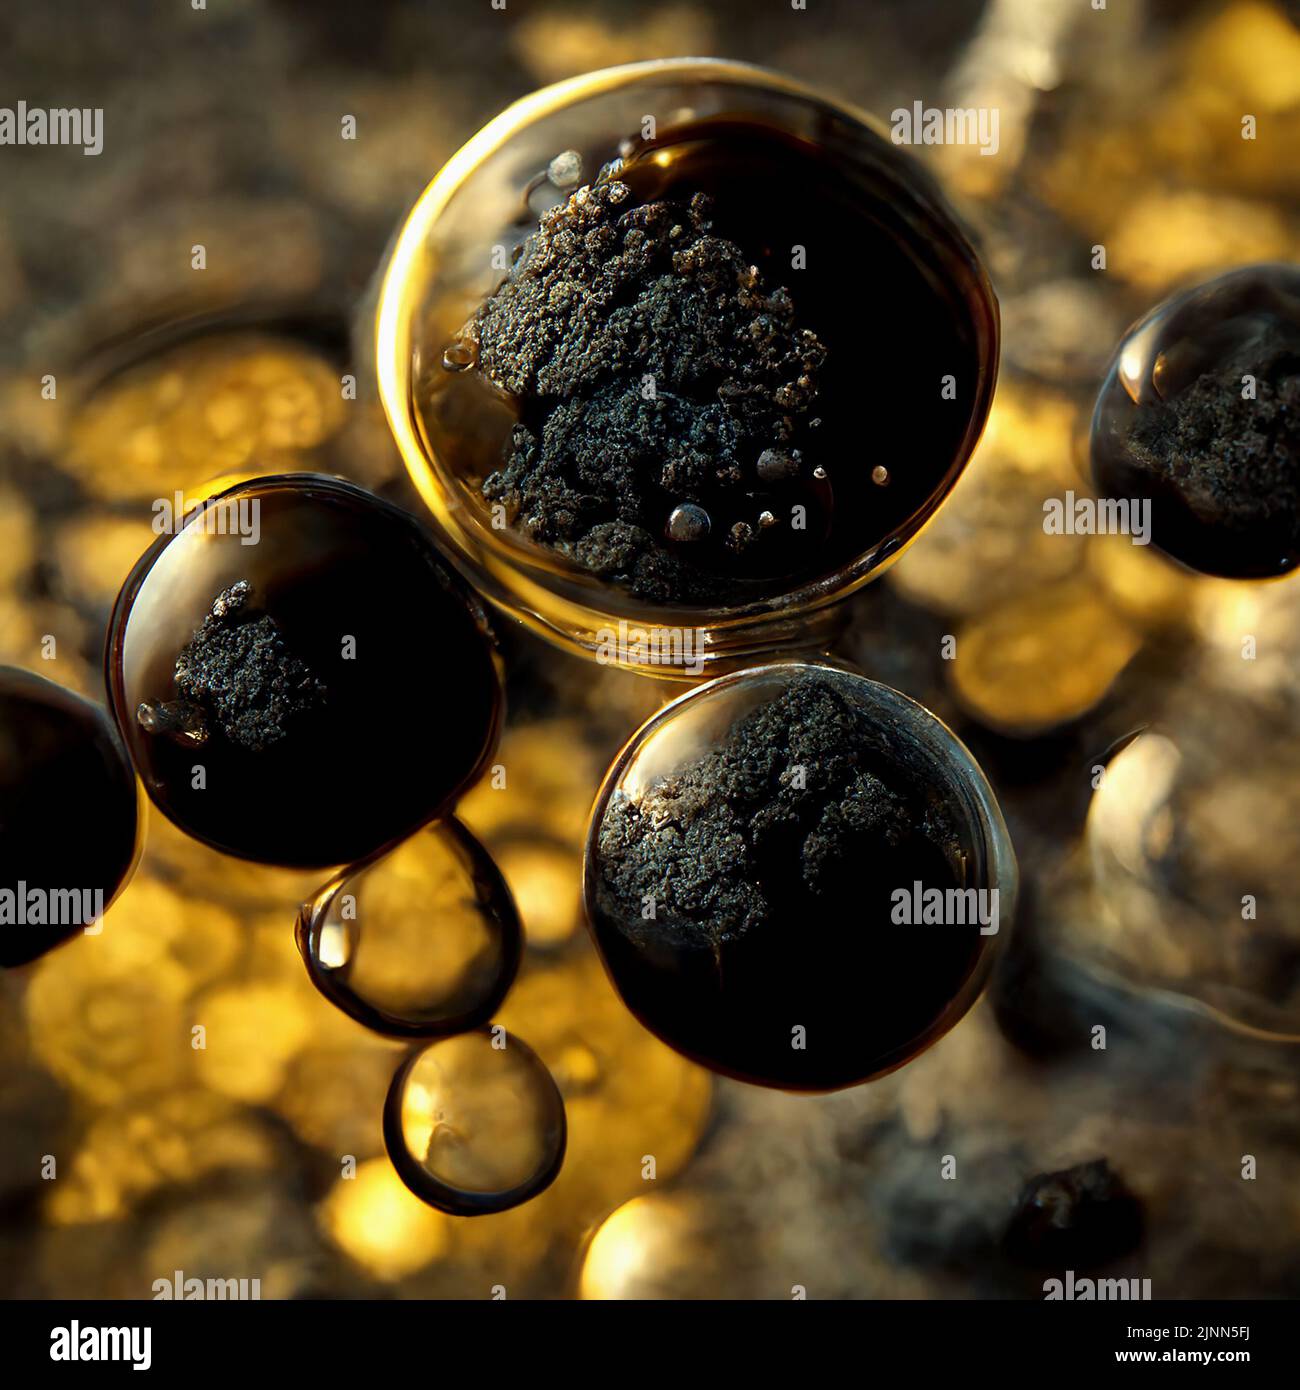 Abstract 3D immagine dell'inquinamento da fuliggine dei gas di scarico al microscopio. Batteri neri nocivi che sembrano gocce di olio motore di cattiva qualità. Foto Stock